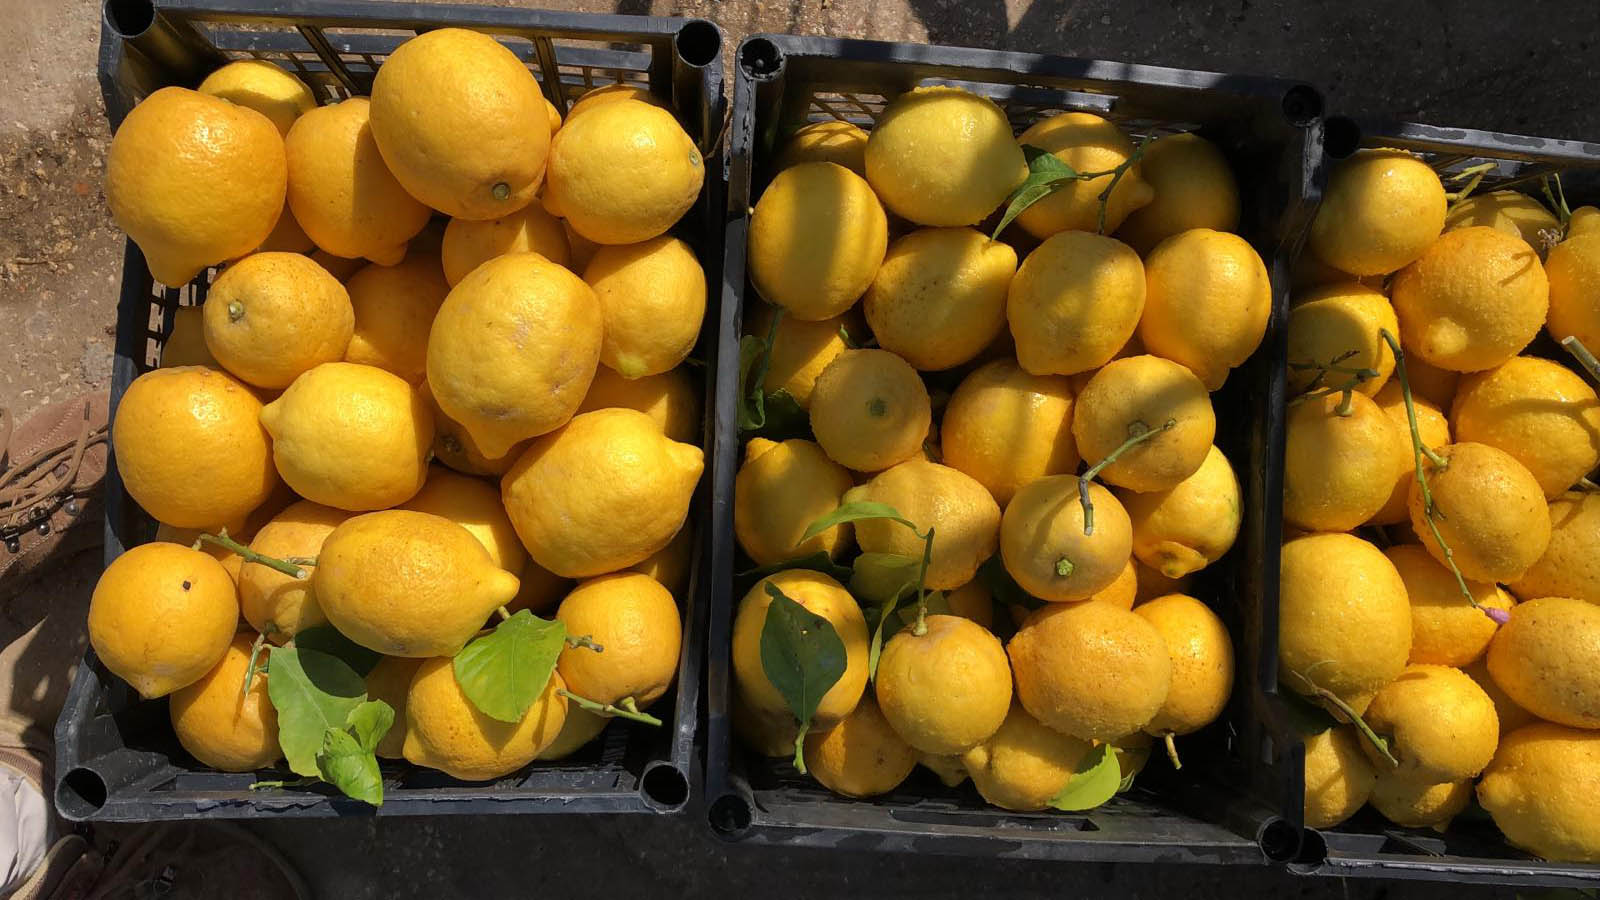 Le jus de citron le matin pour perdre du poids: la vérité